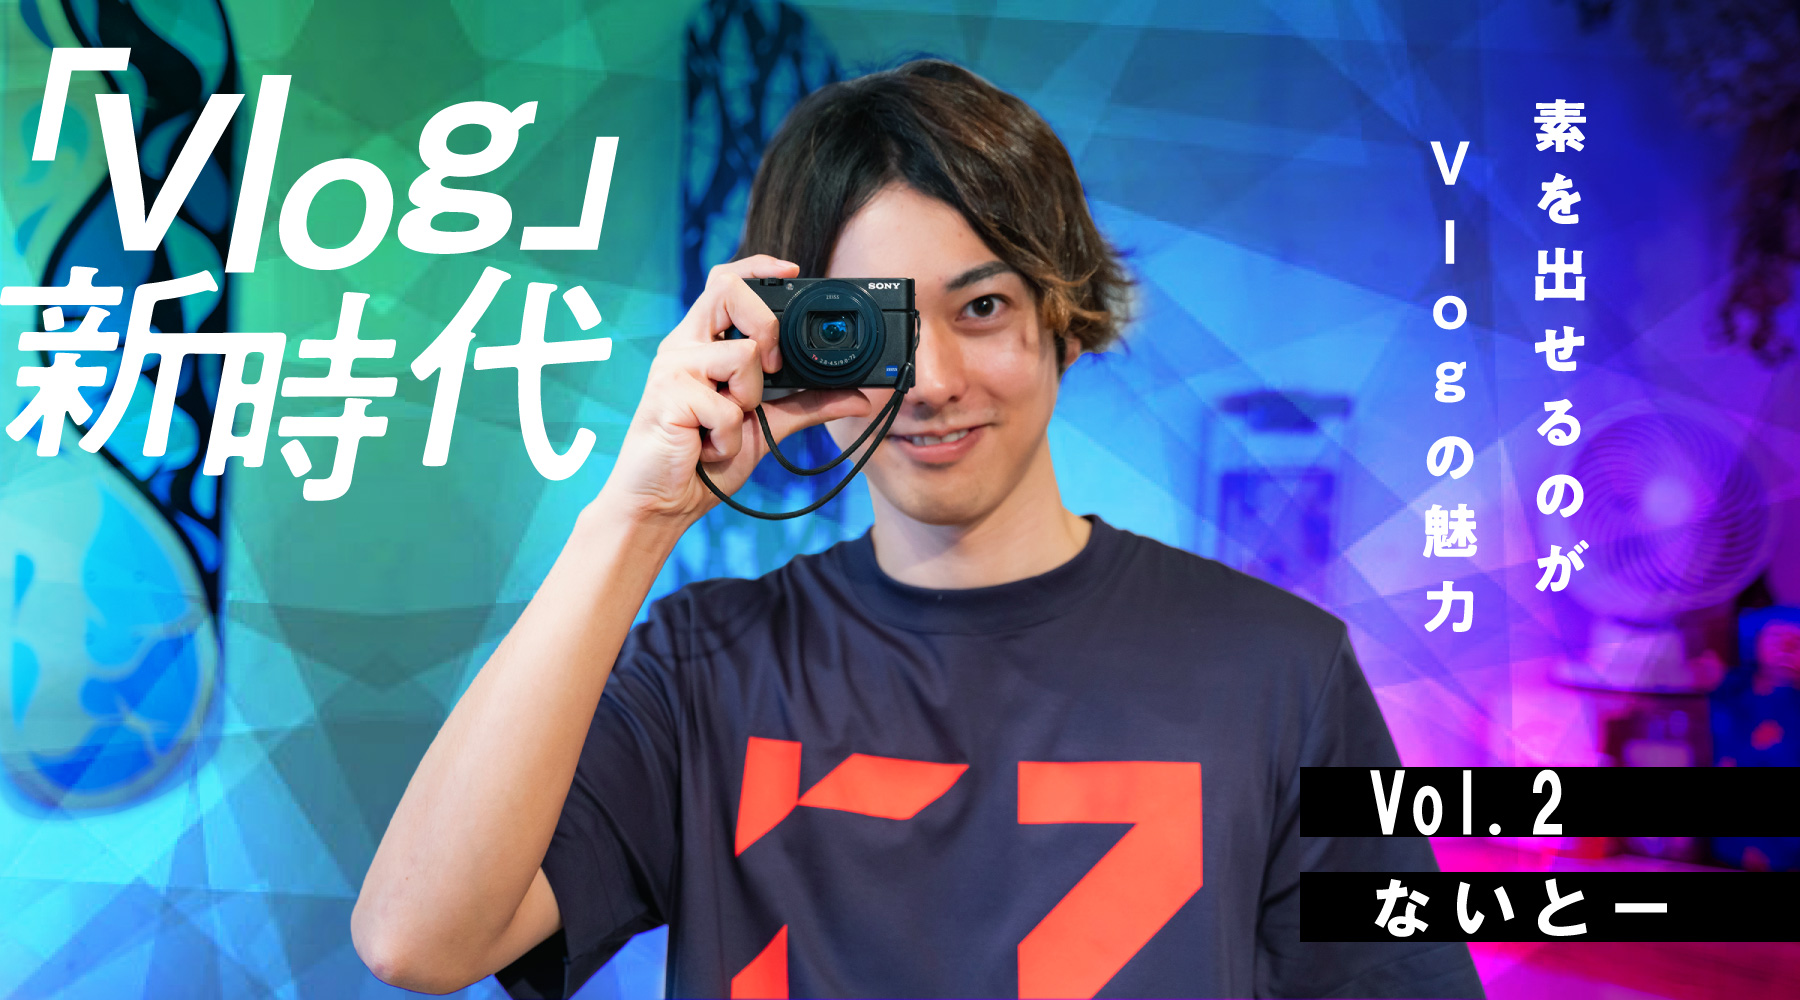 「Vlog」新時代 Vol.1 Yusuke Okawa 自分が楽しいことを、思い出に残す。まずは“撮ること”が大切